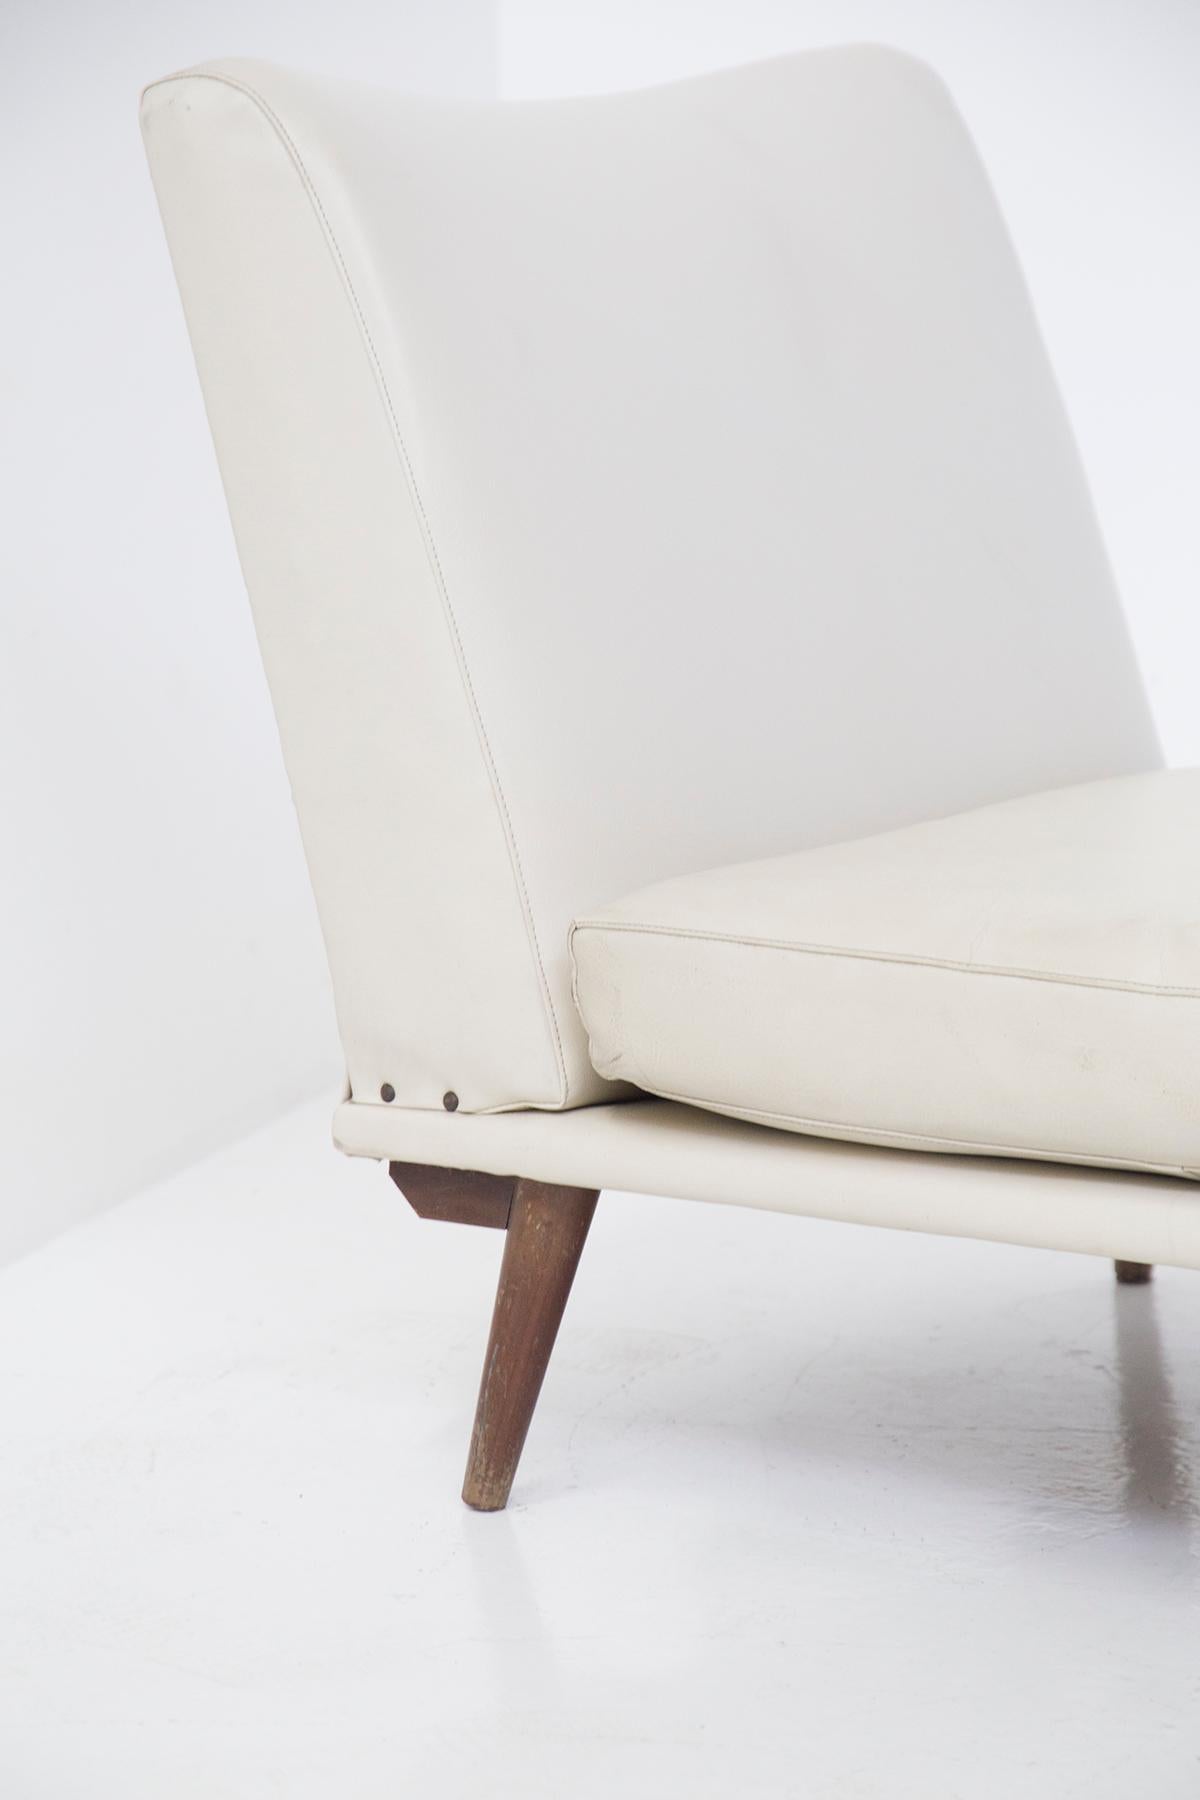 Prächtiges Paar Holzsessel, die dem großen Designer Gianfranco Frattini in den 70er Jahren zugeschrieben werden, aus feiner italienischer Fertigung.
Die Sessel haben ein solides Gestell aus dunklem Massivholz, sehr attraktiv. Die Stützfüße haben